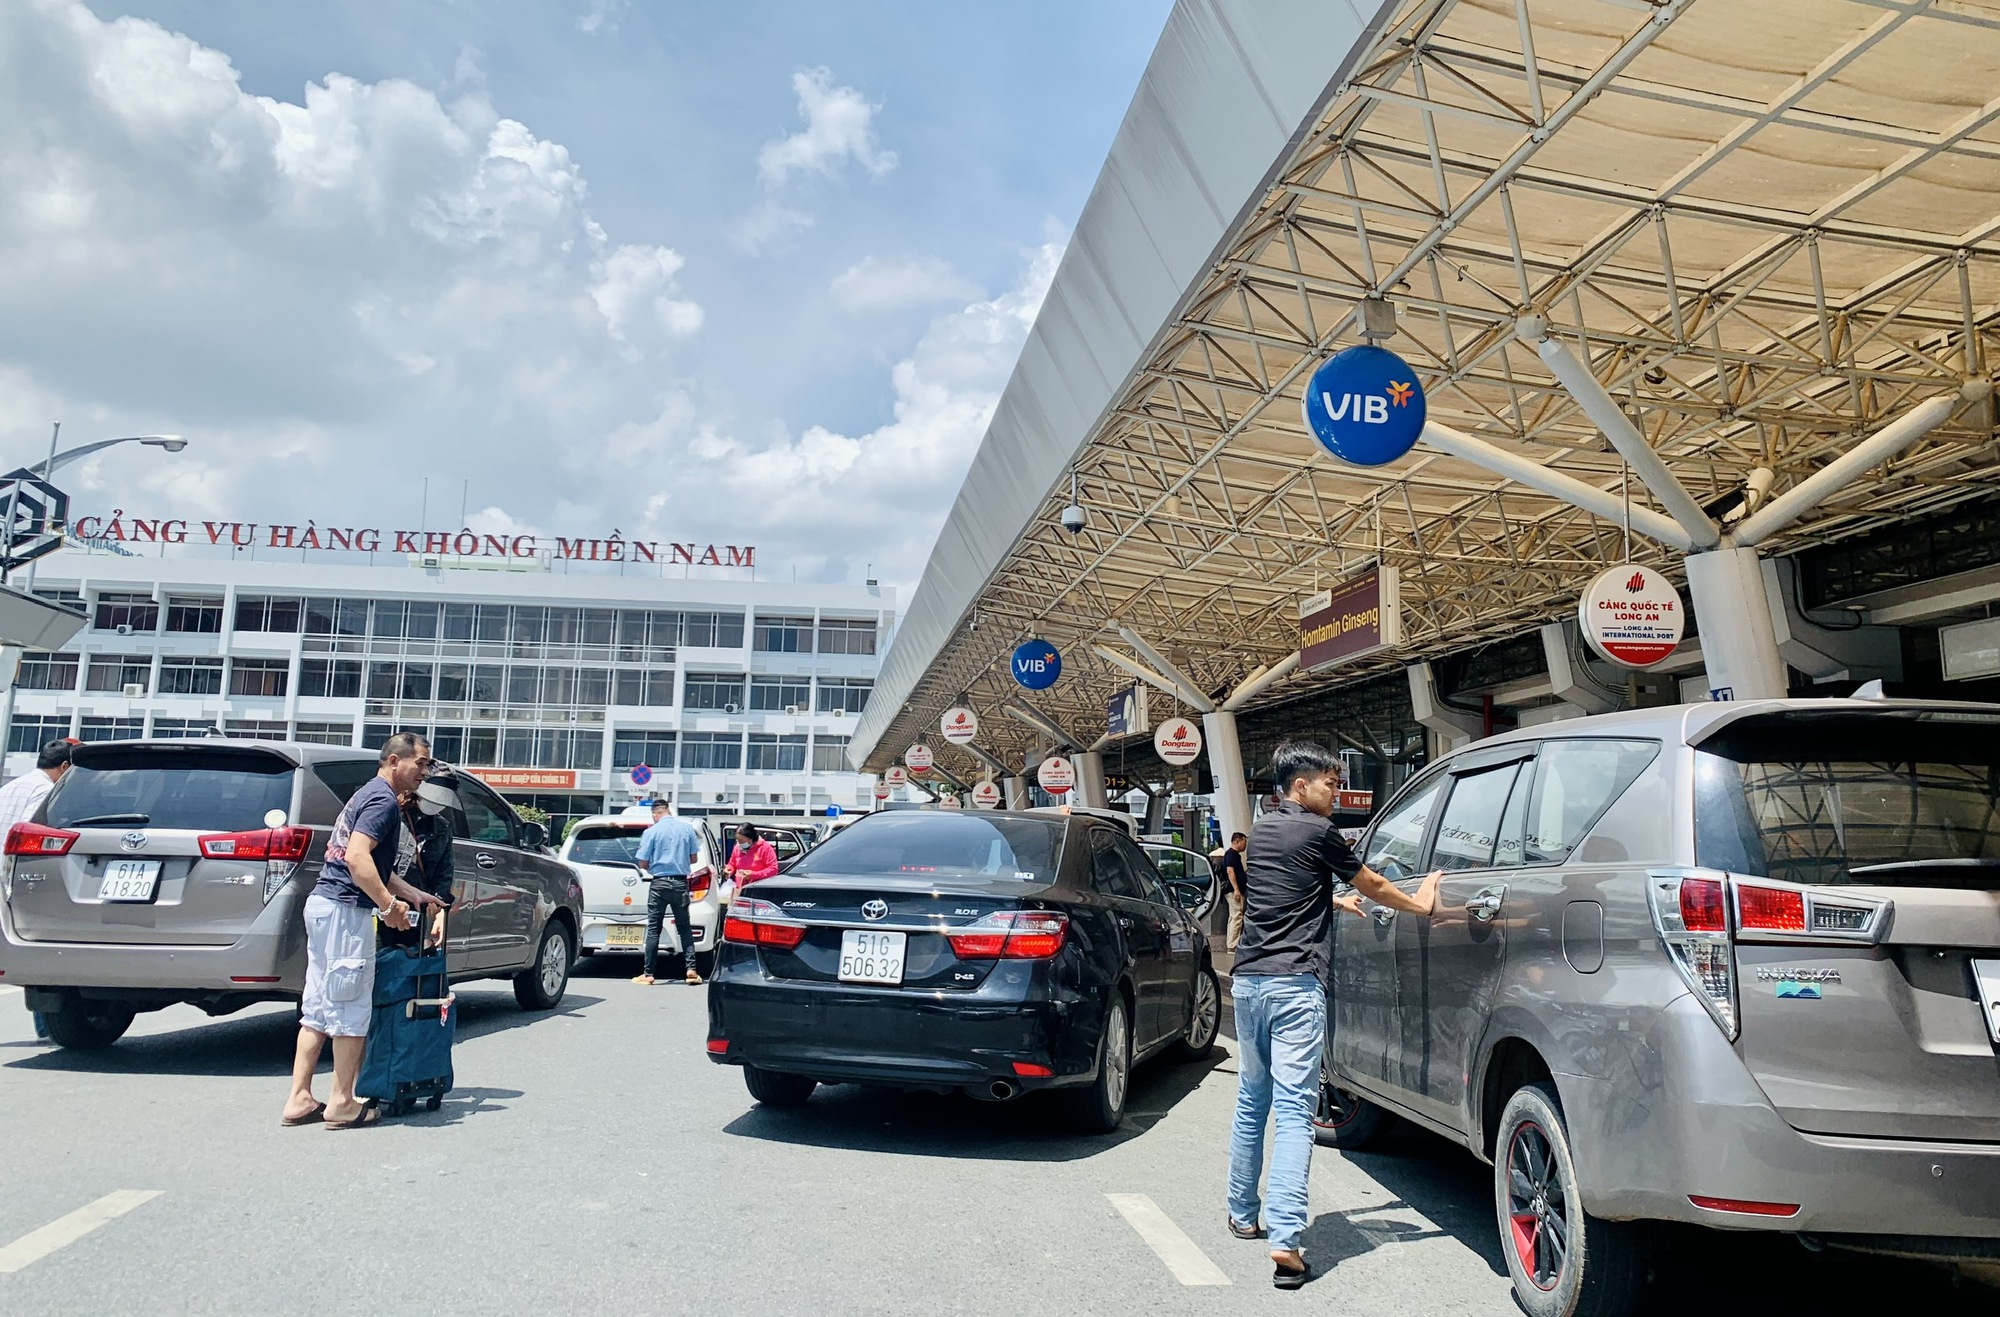 Sân bay Tân Sơn Nhất thông thoáng trong ngày đầu kỳ nghỉ lễ 2/9 - Ảnh 1.